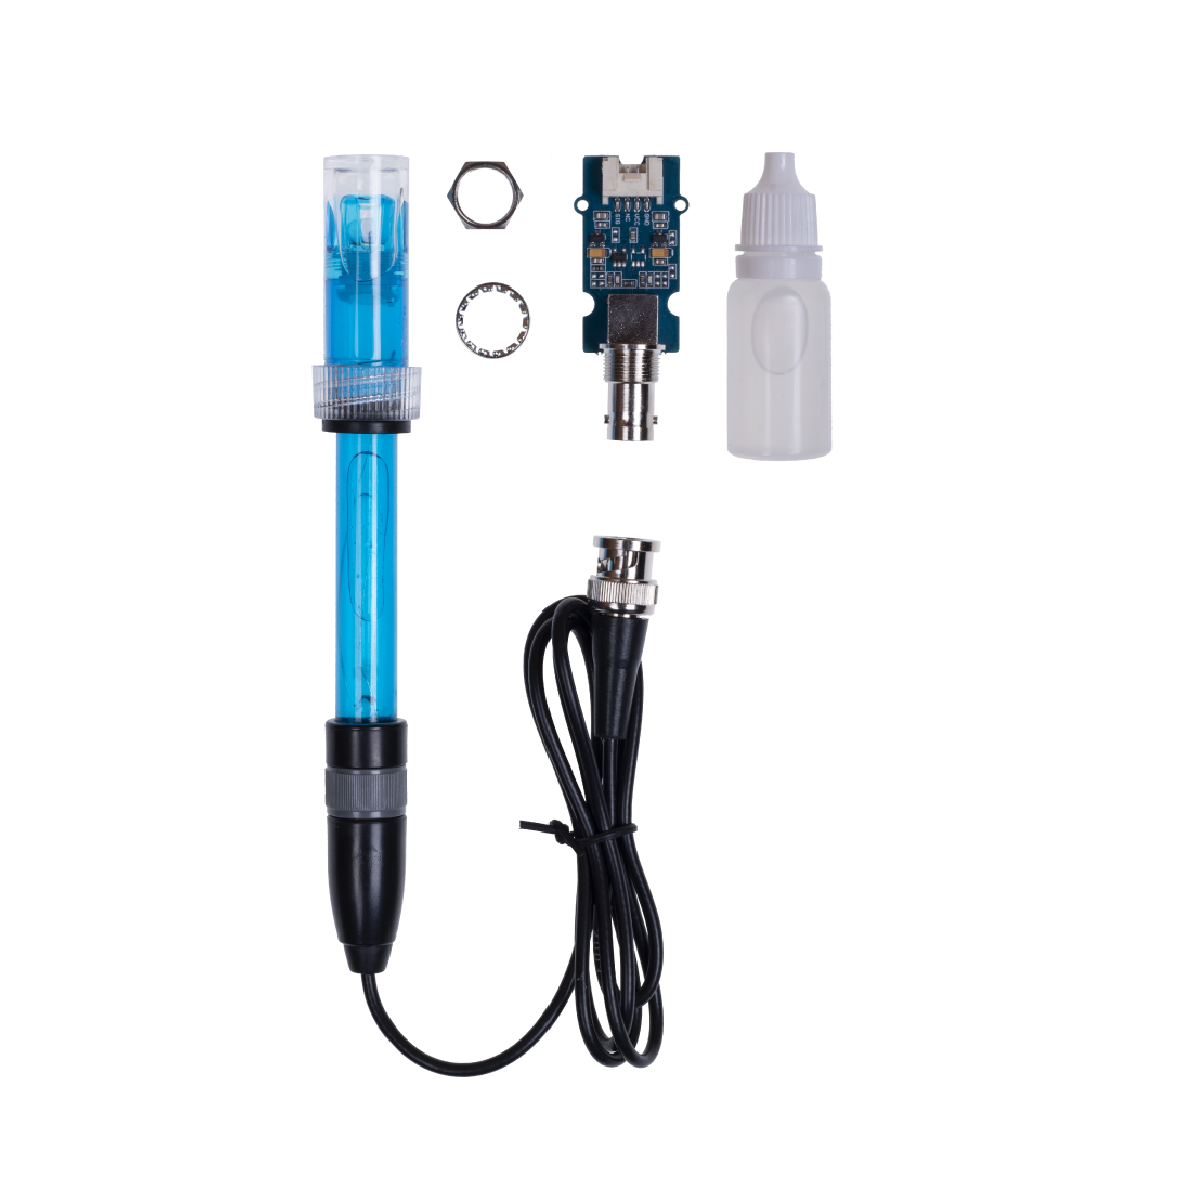 Seeed Studio Grove pH Sensor Kit, E-201C